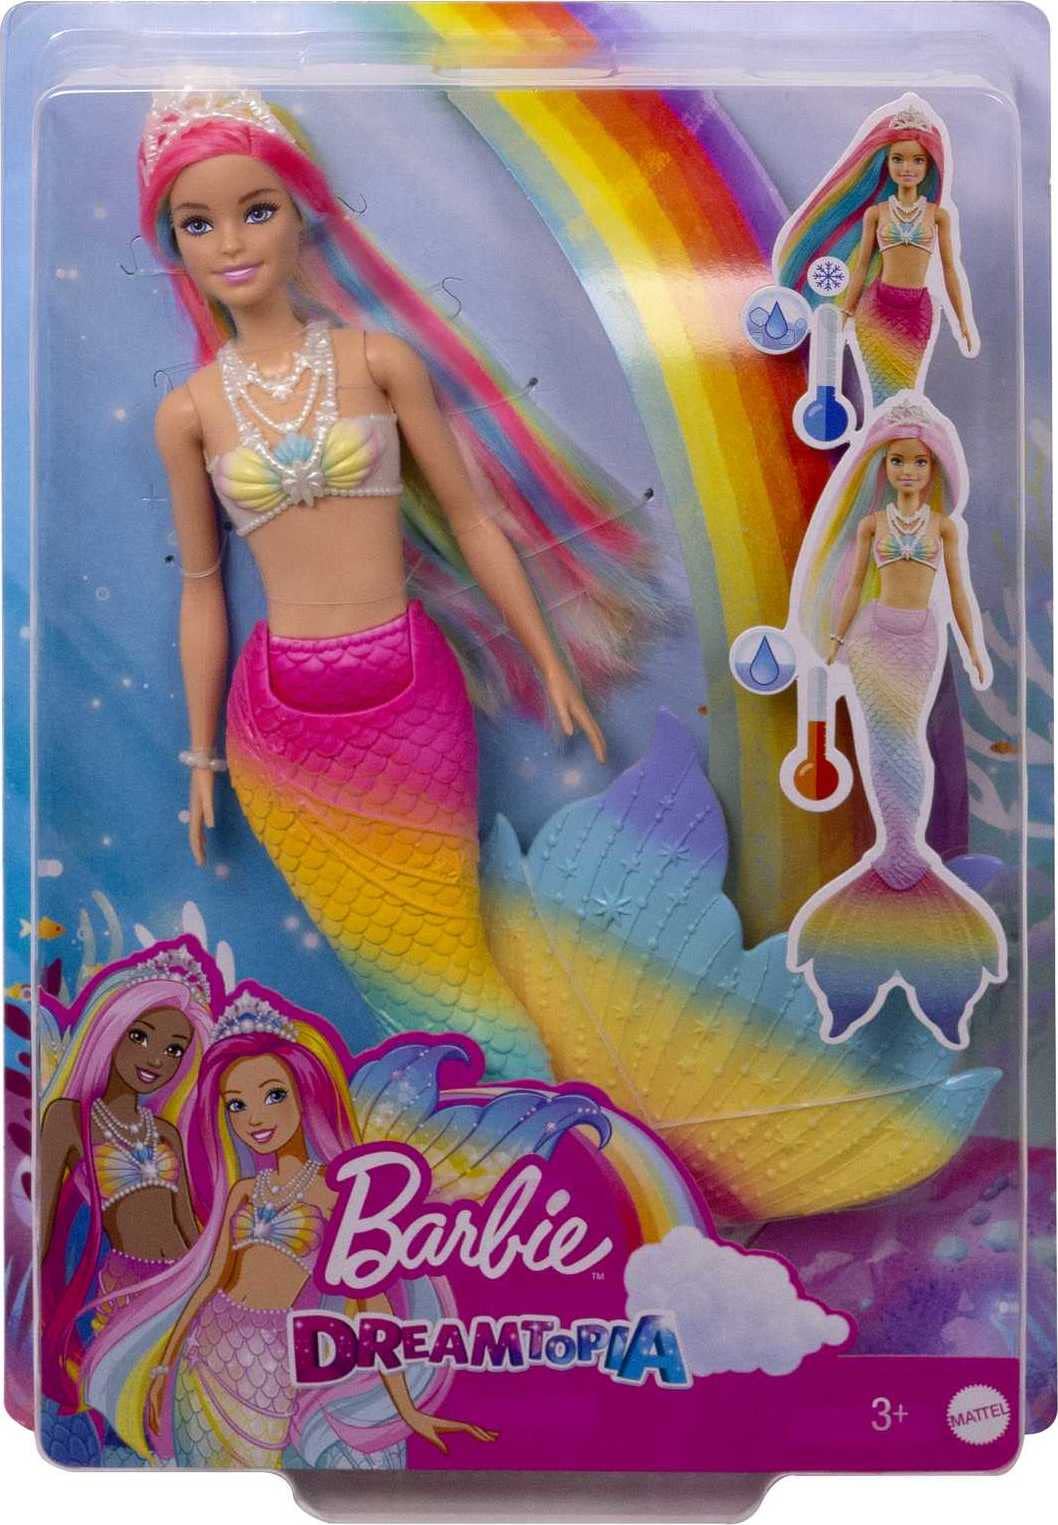 Barbie Sirena Dreamtopia